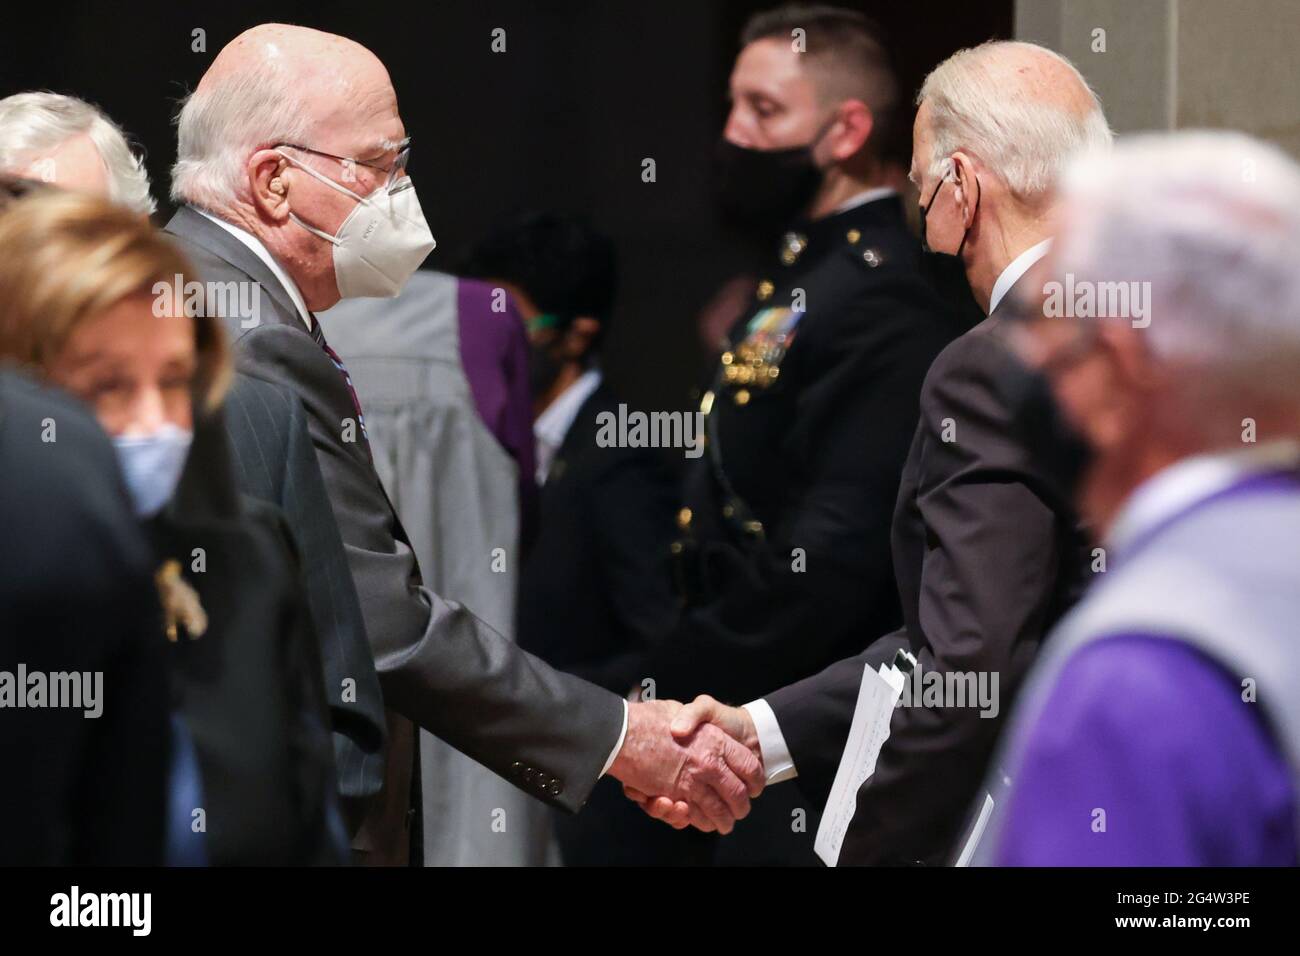 Le président américain Joe Biden serre la main avec le sénateur Patrick Leahy (D-VT) après la cérémonie funéraire de l'ancien sénateur John Warner à la cathédrale nationale de Washington, DC, États-Unis le 23 juin 2021. Oliver Contreras/Pool via REUTERS Banque D'Images